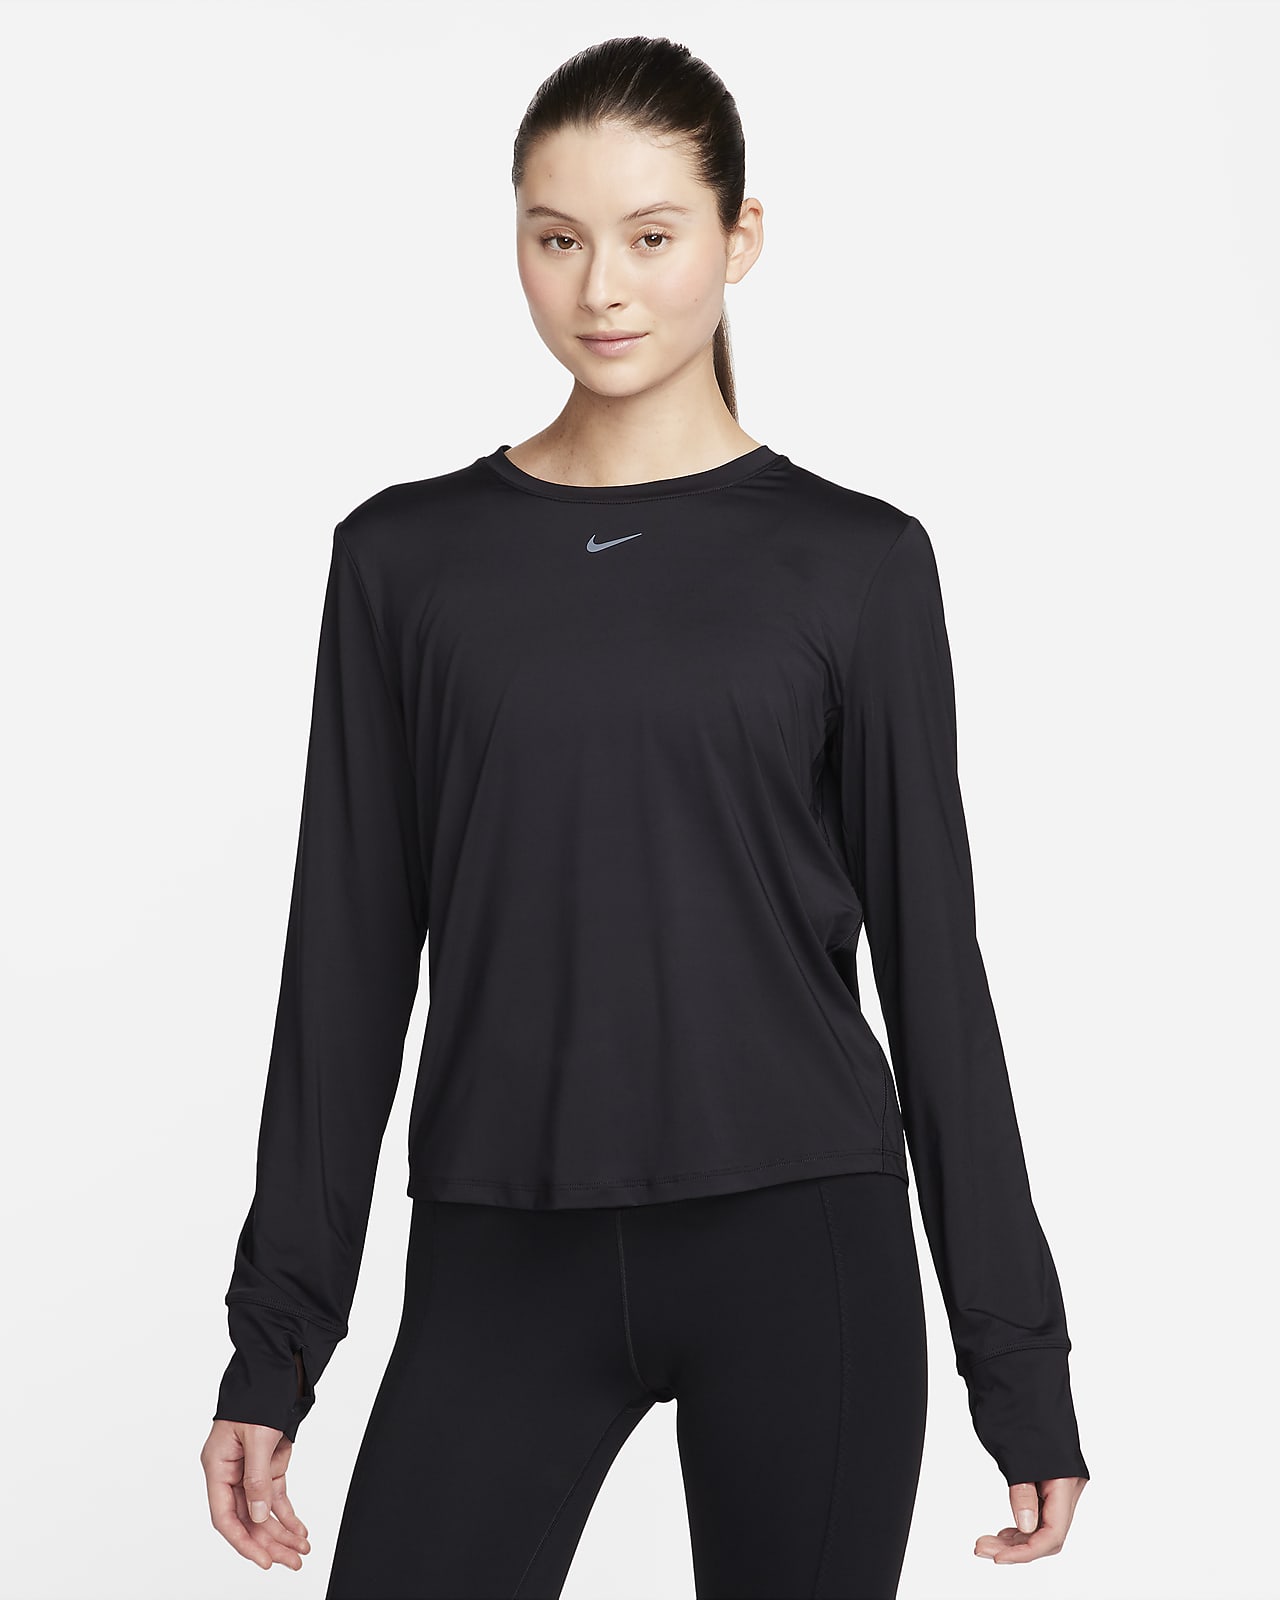 Γυναικεία μακρυμάνικη μπλούζα Dri-FIT Nike One Classic